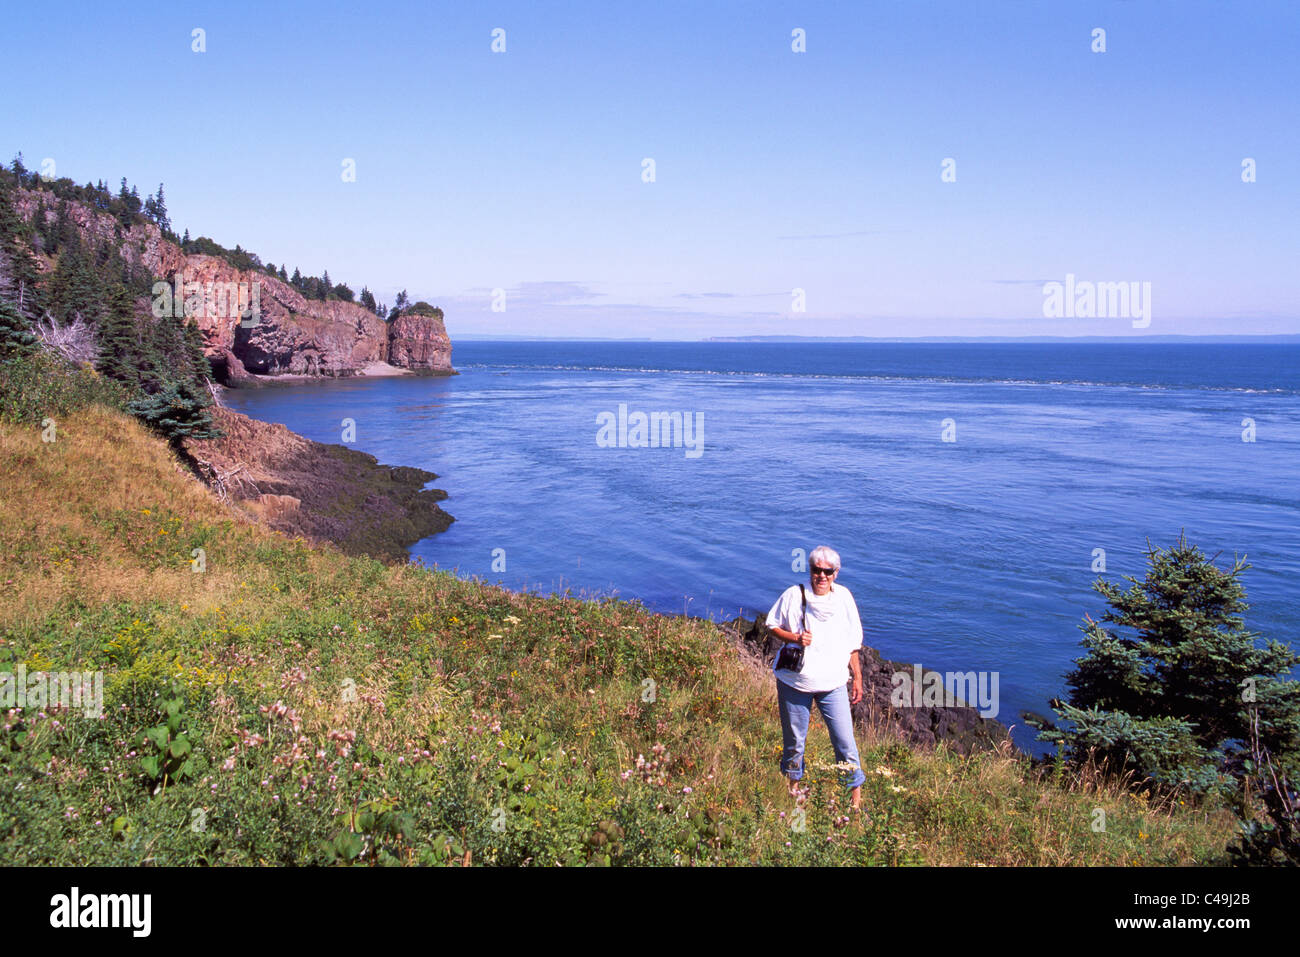 Capo d'Or, Nova Scotia, Canada - costa frastagliata lungo la baia di Fundy affacciato sul Bacino di Minas e promontori di basalto con grotte marine Foto Stock